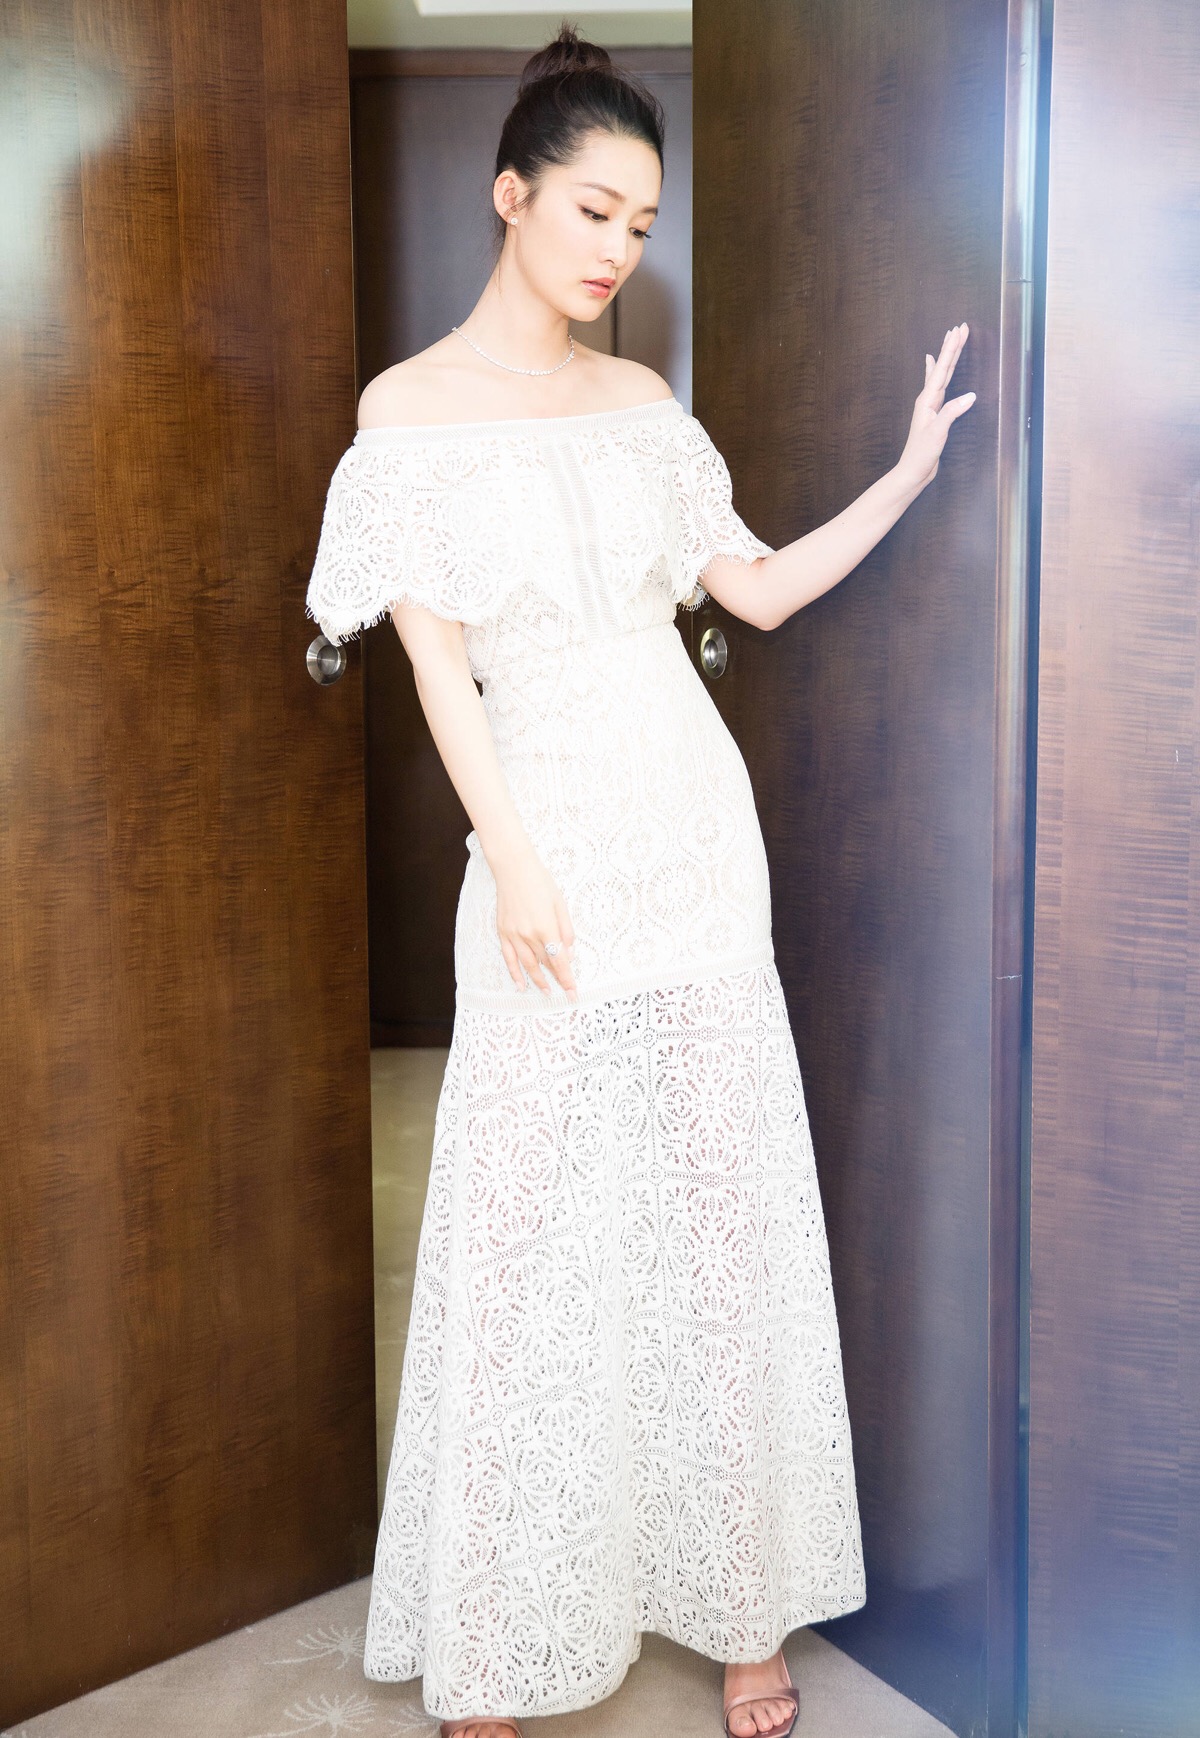 李沁身着一袭白色一字肩荷叶边蕾丝长裙出席活动,别致的玫瑰花纹优雅